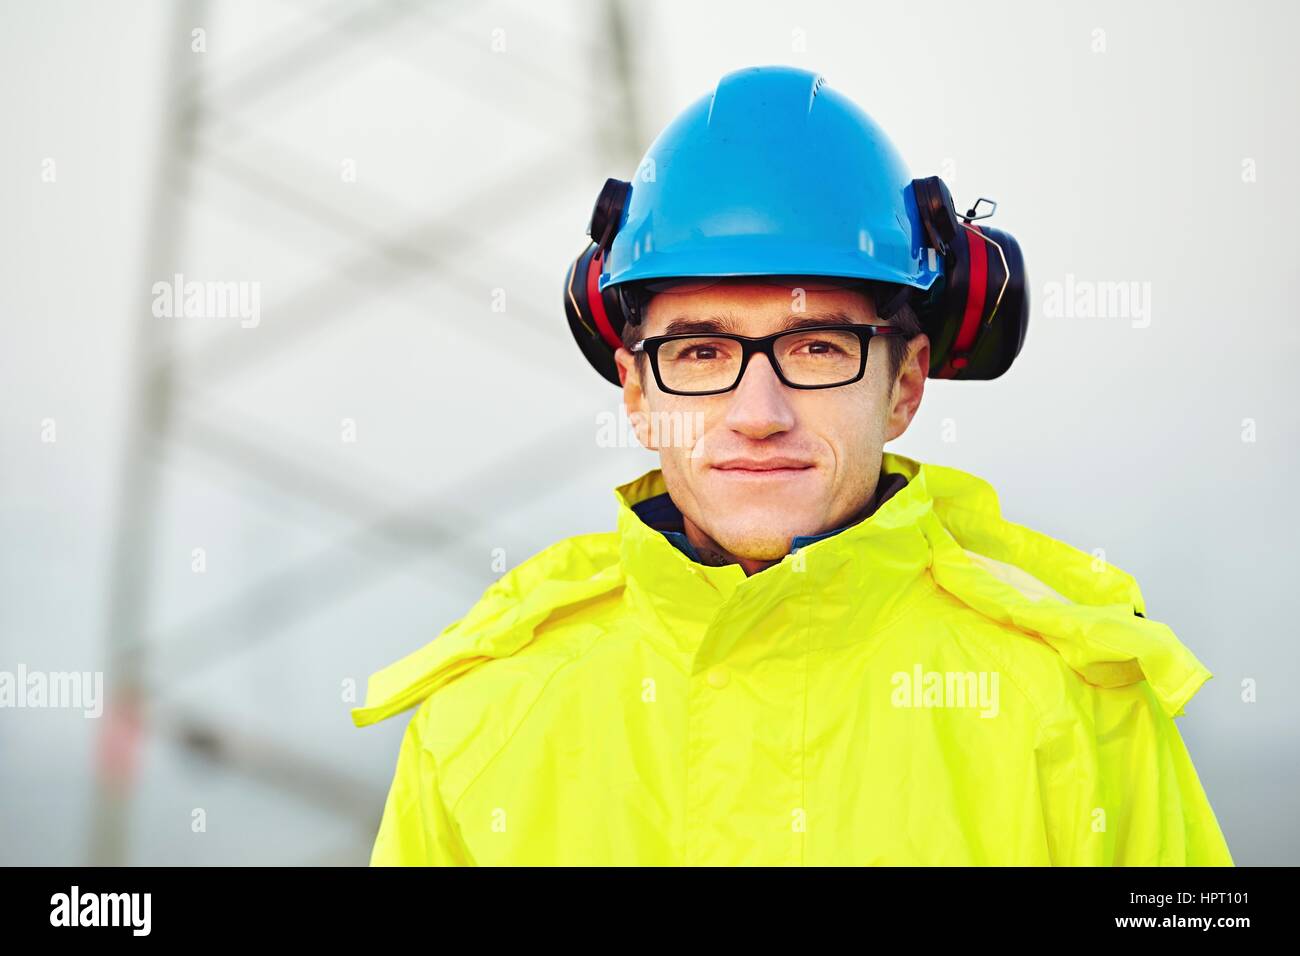 Lavoratore che indossa abiti riflettenti con casco. Foto Stock